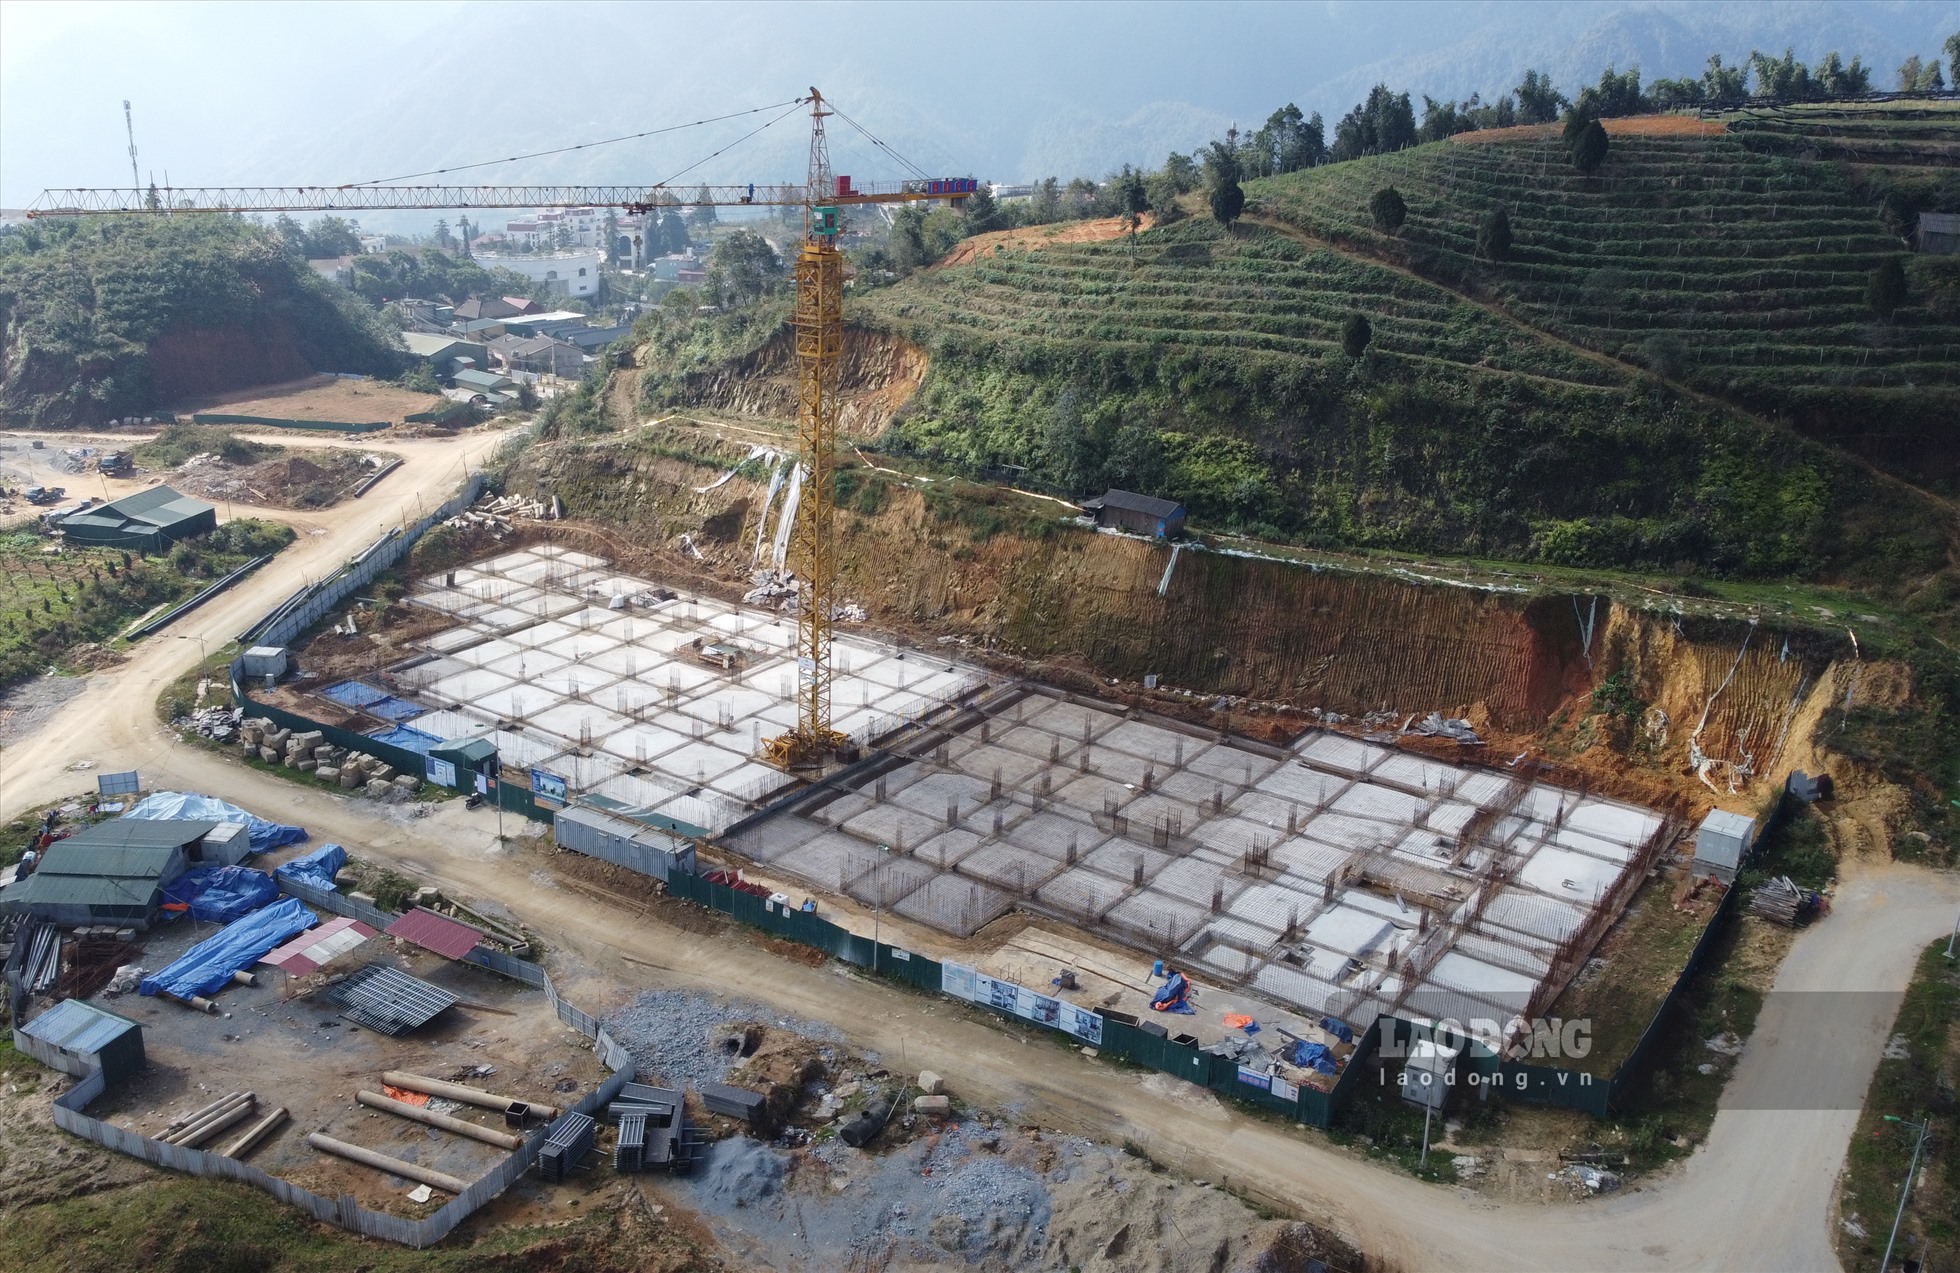 Theo tìm hiểu của PV, Dự án nhà ở xã hội dành cho người thu nhập thấp tại Khu dự phòng Tây Bắc (thị xã Sa Pa) được UBND tỉnh Lào Cai phê duyệt chủ trương đầu tư ngày 30.1.2019. Đến giữa năm 2021, dự án được điều chỉnh tiến độ xây dựng từ tháng 8.2020 đến hết tháng 2.2022.